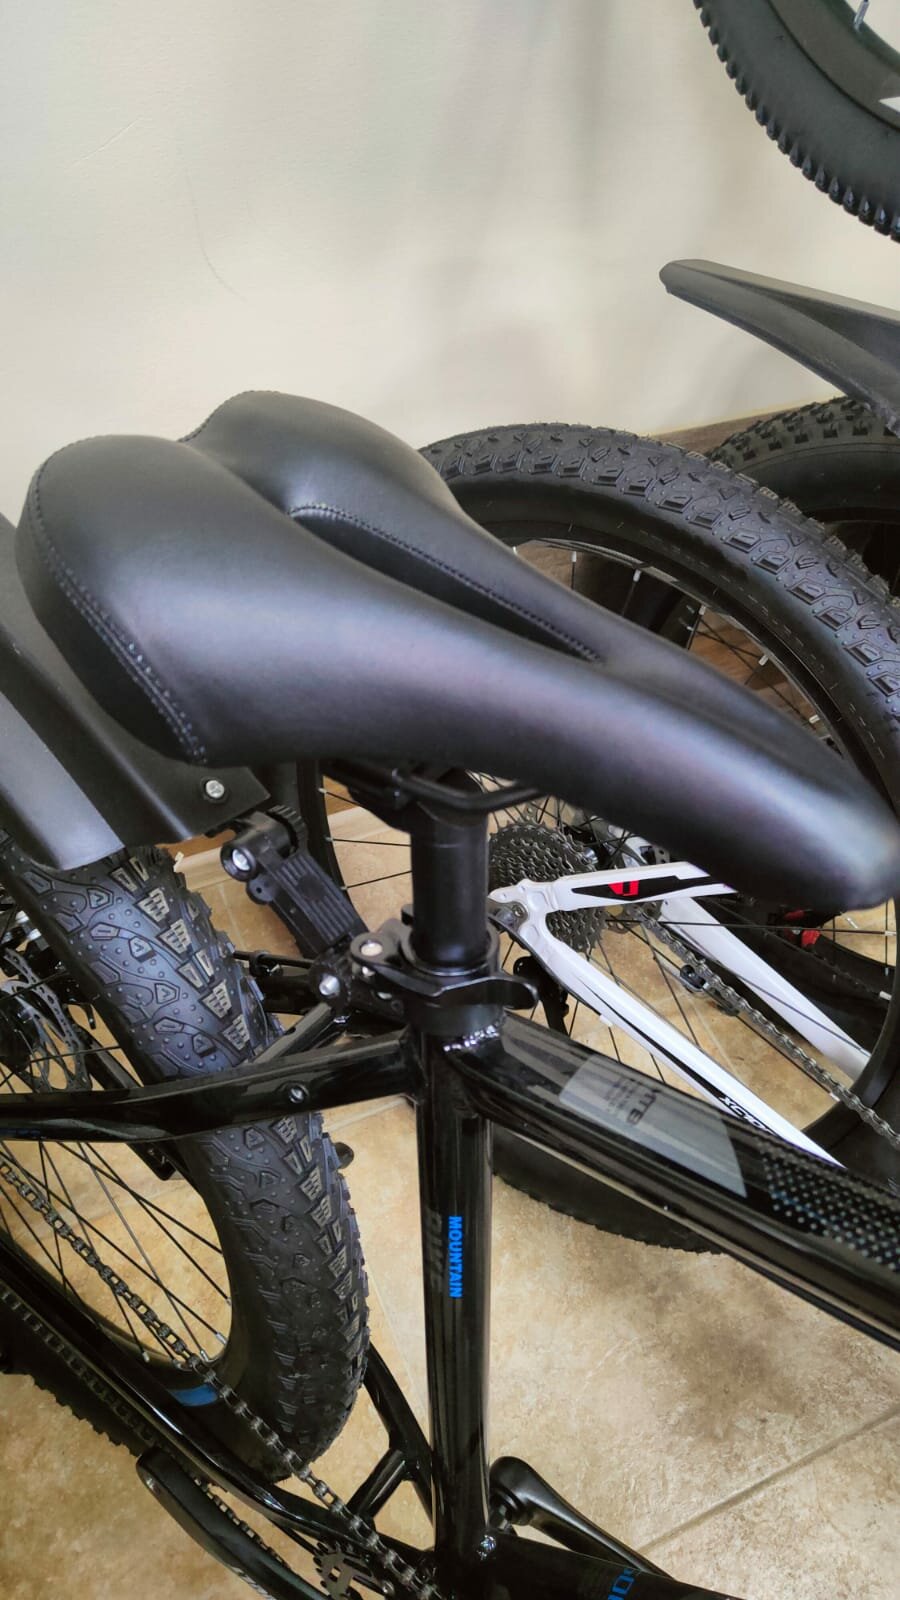 Велосипед горный 29" 3.0" S-jeelt" полуфет для высокого роста высокая рама алюминиевый полуфэт алюминиевая рама